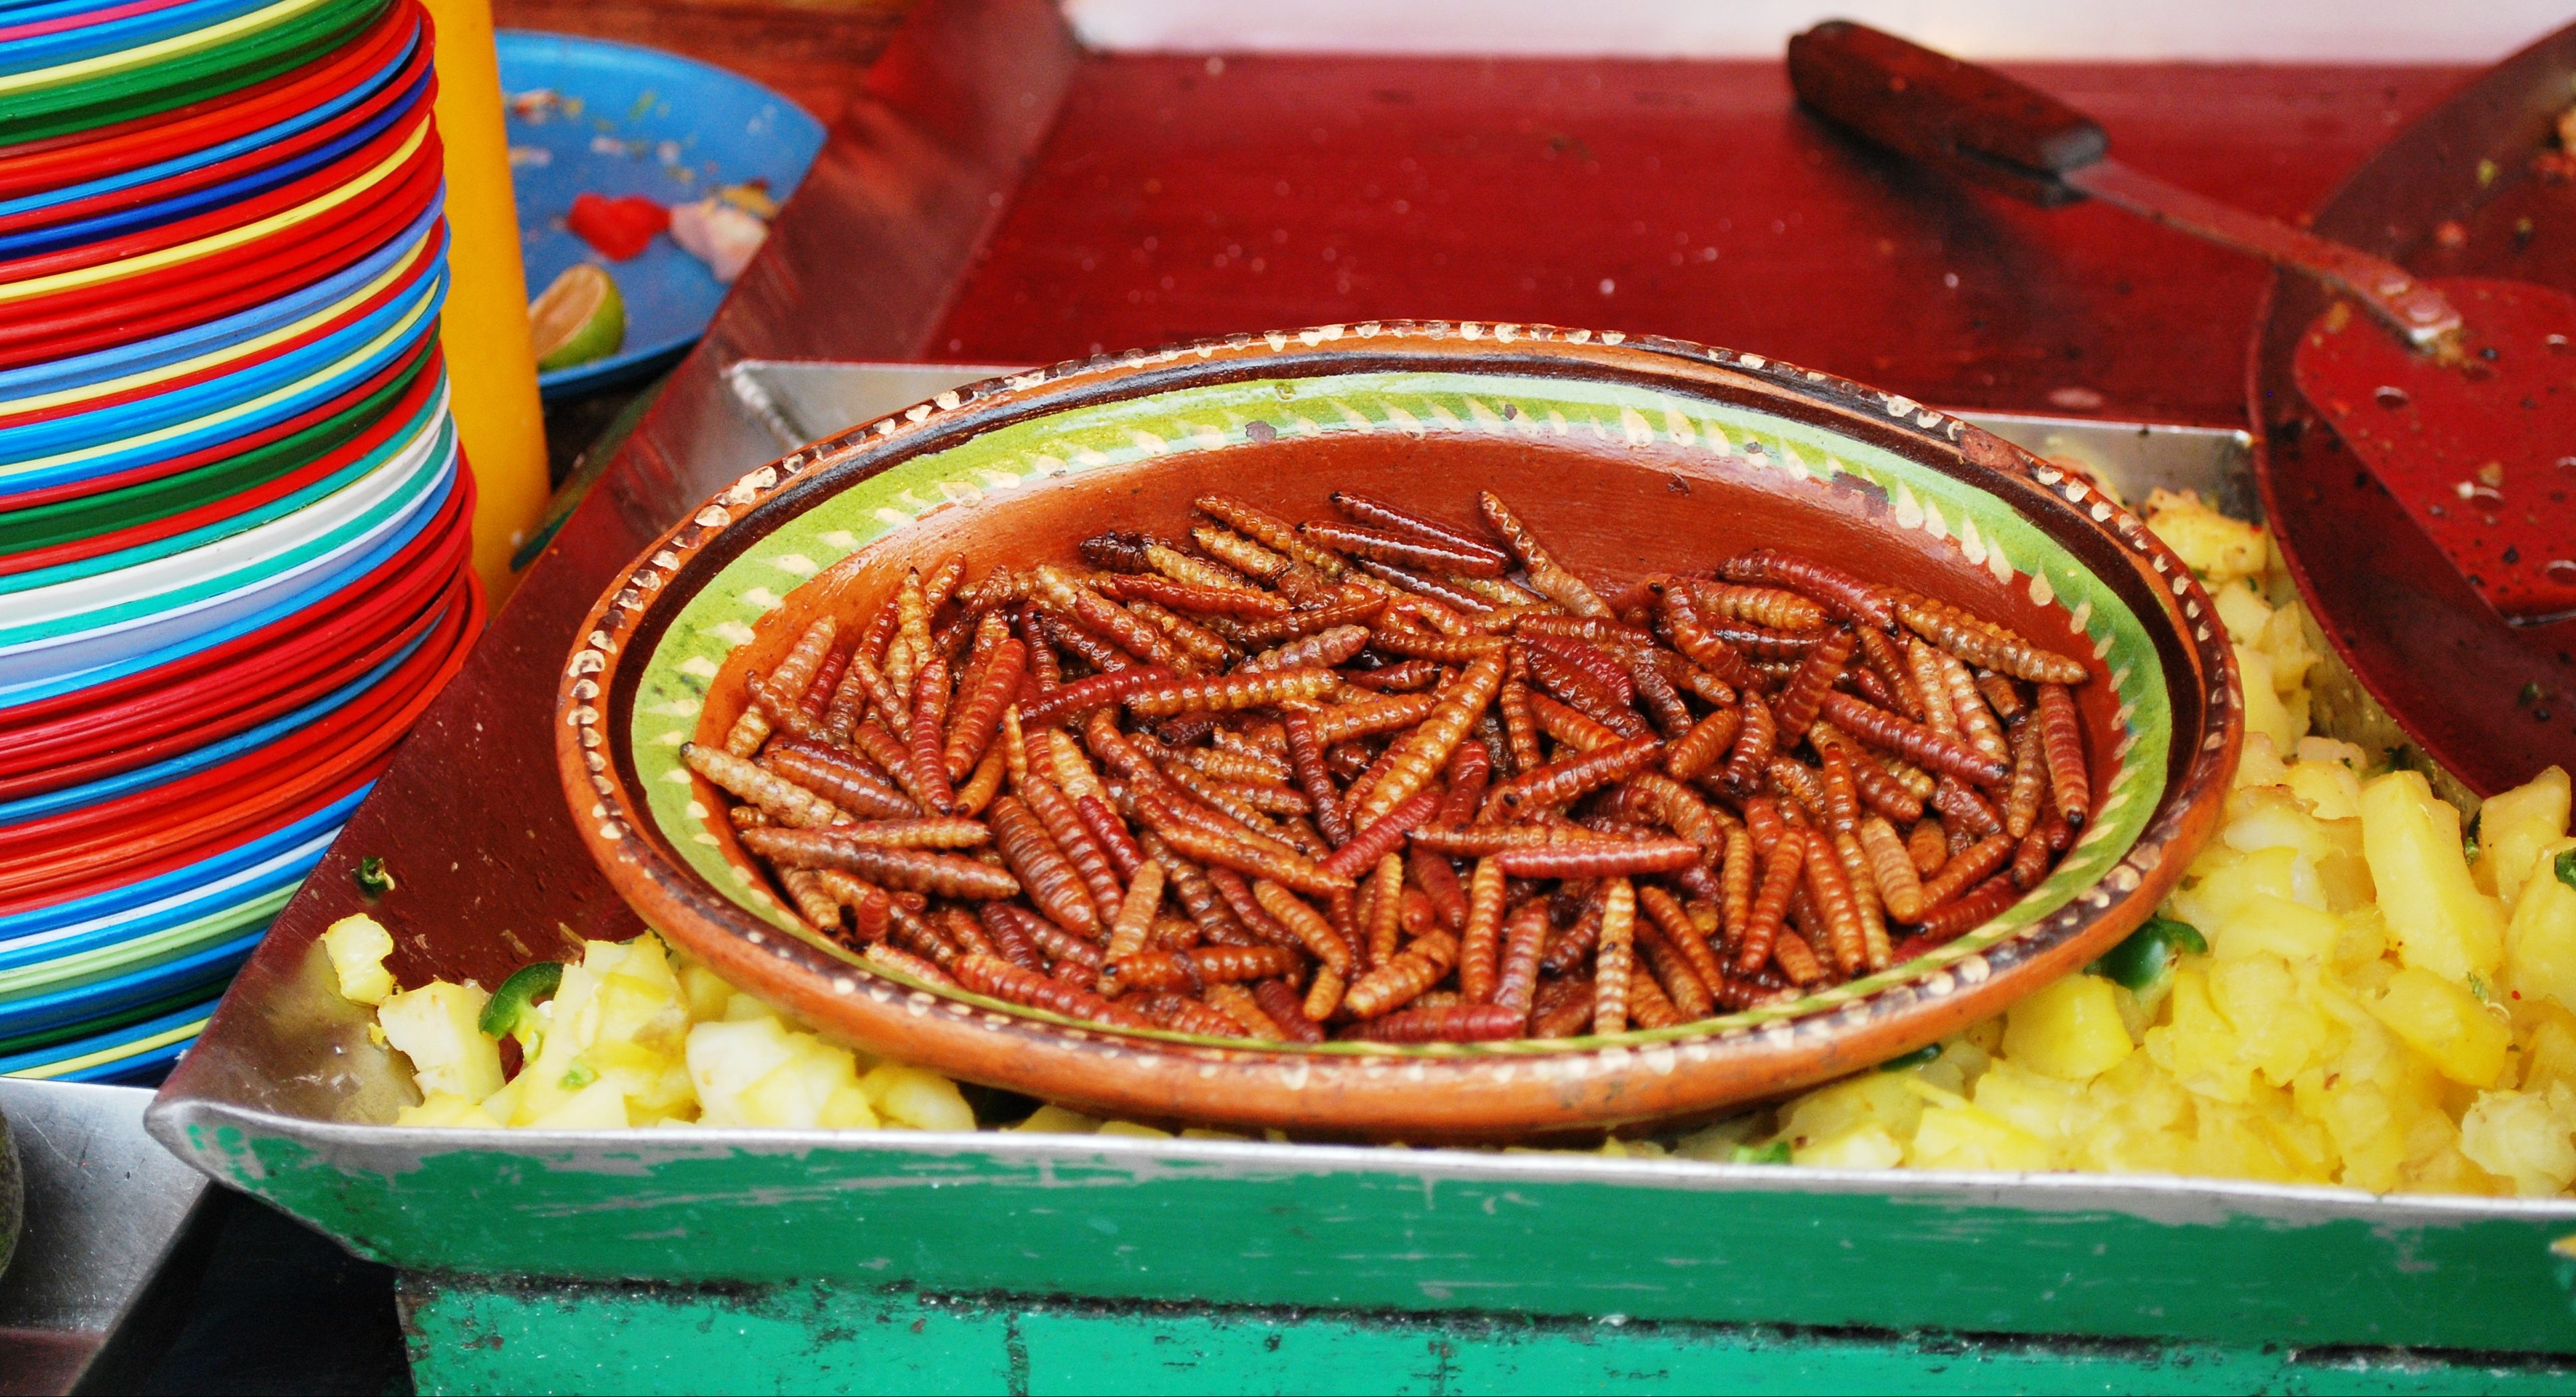 Gusanos de maguey y chinicuiles, los reyes de los insectos comestibles